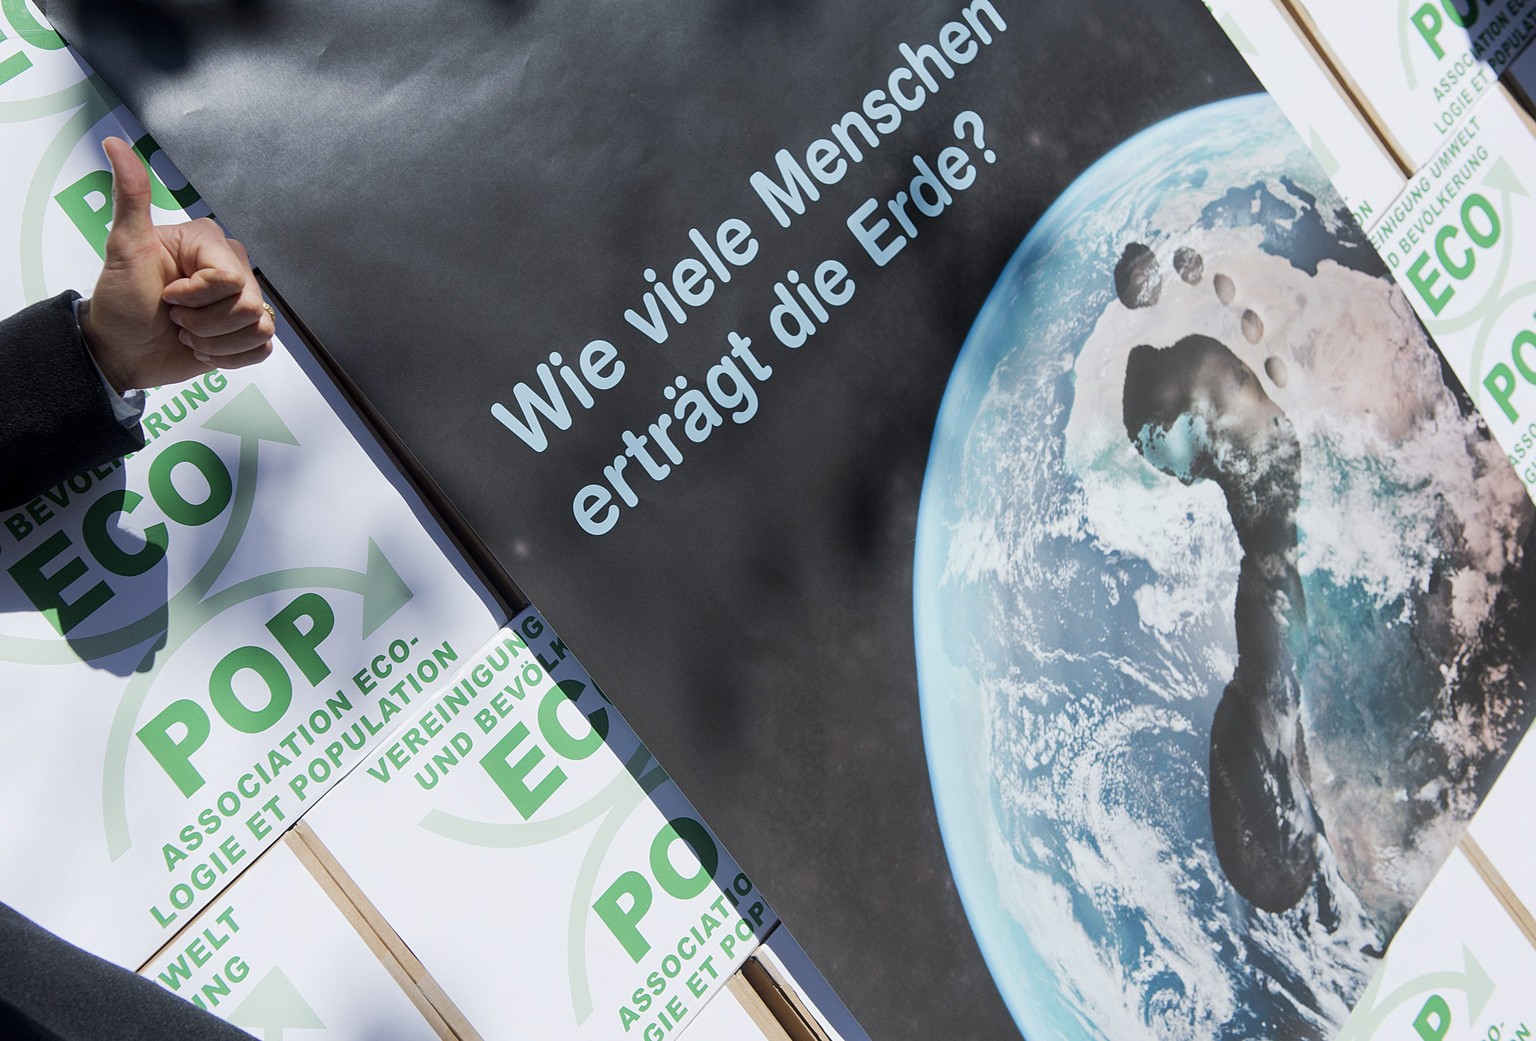 Die Ecopop-Initiative «Stopp der Überbevölkerung» will das Bevölkerungswachstum in der Schweiz durch Zuwanderung prozentual beschränken – und Entwicklungshilfe für «Massnahmen zur Förderung der freiwilligen Familienplanung» ausgeben.